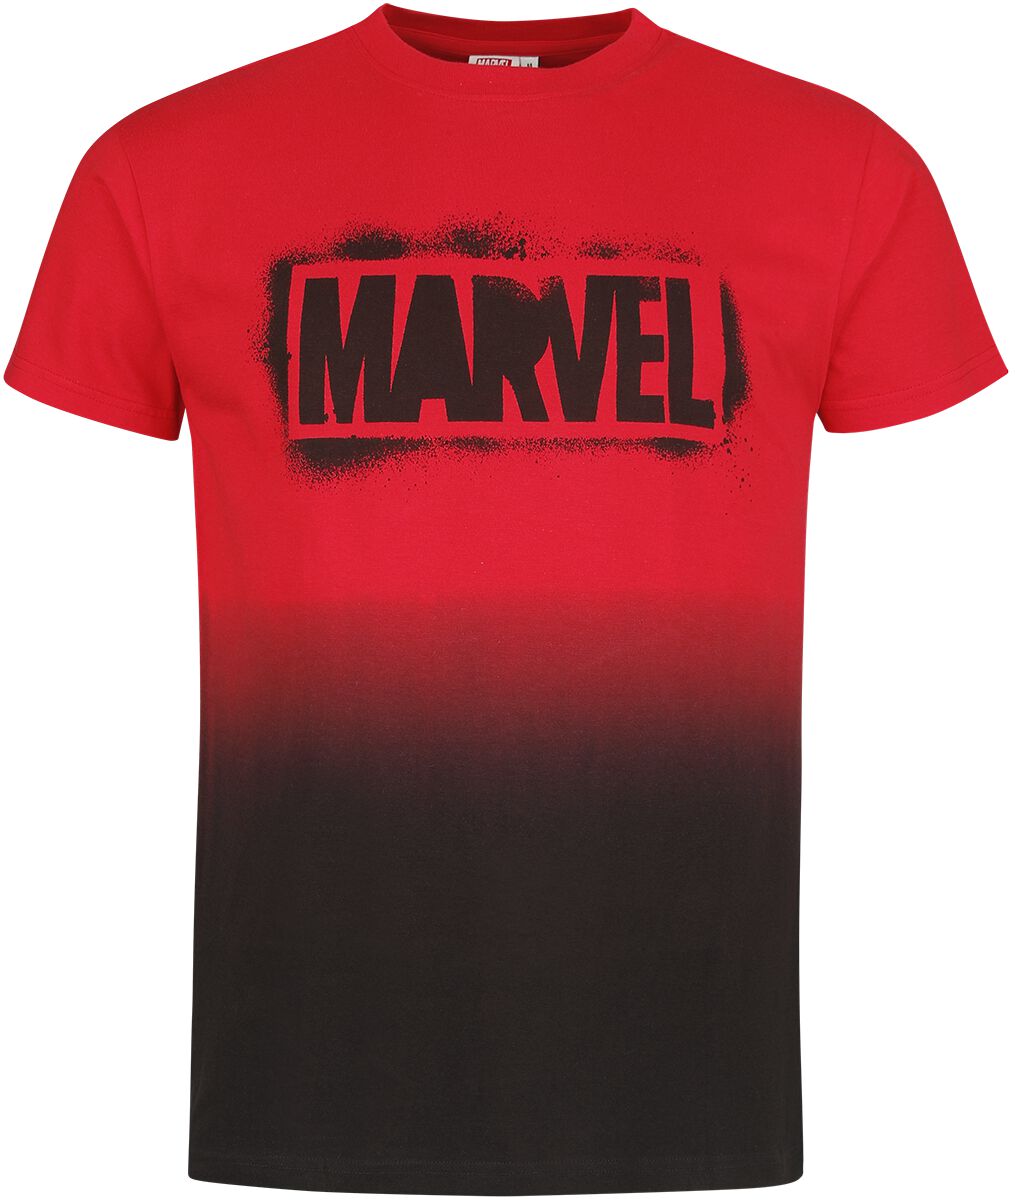 Marvel - Marvel T-Shirt - Logo - S bis XXL - für Männer - Größe XL - multicolor  - EMP exklusives Merchandise!